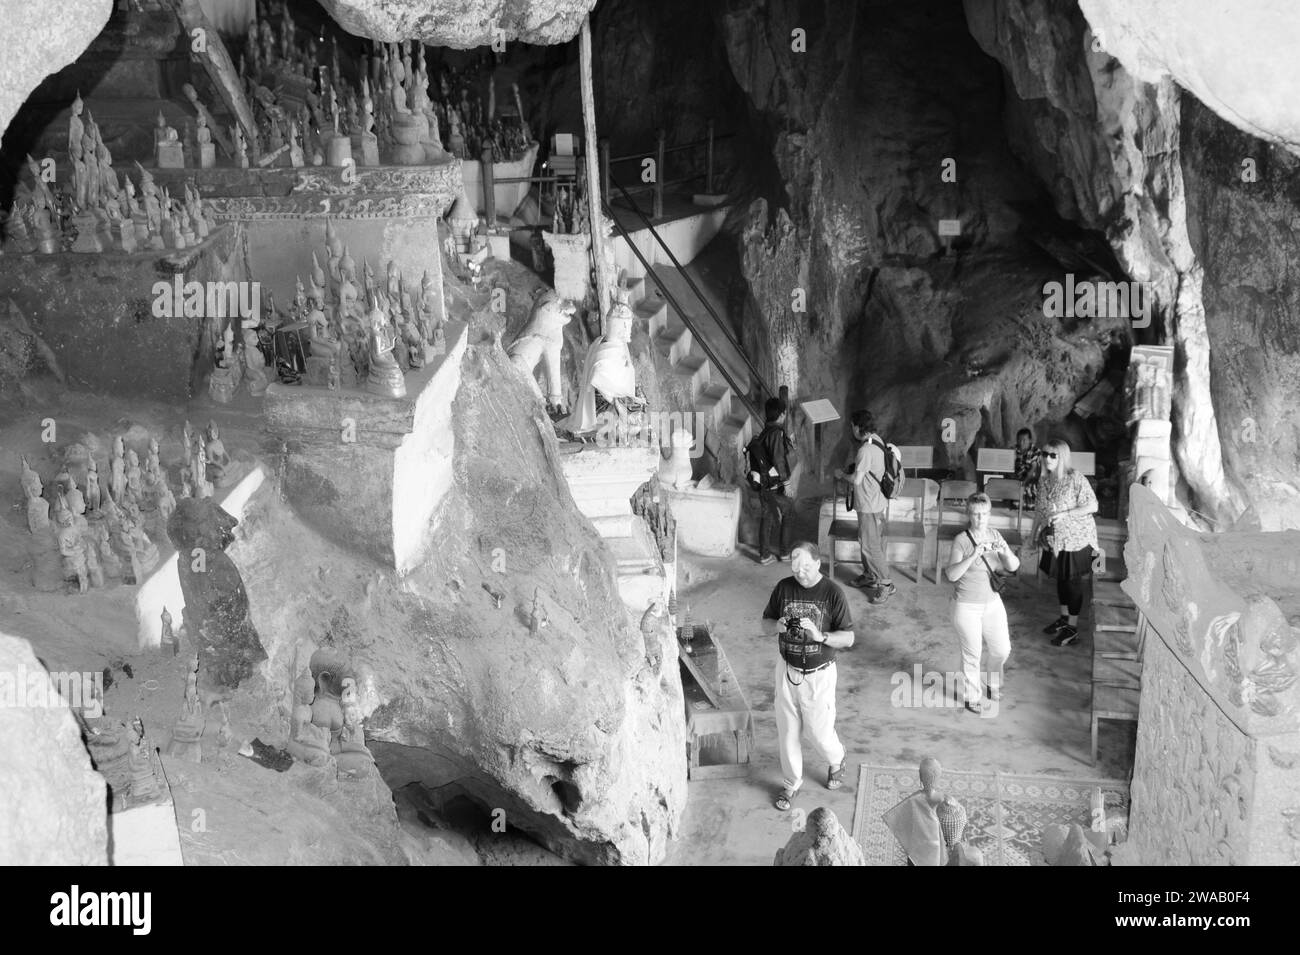 Visite de Pak ou Cave pleine de milliers de bouddhas. Nordlaos : Pak ou Höhlen mit tausenden von Buddhas. Banque D'Images